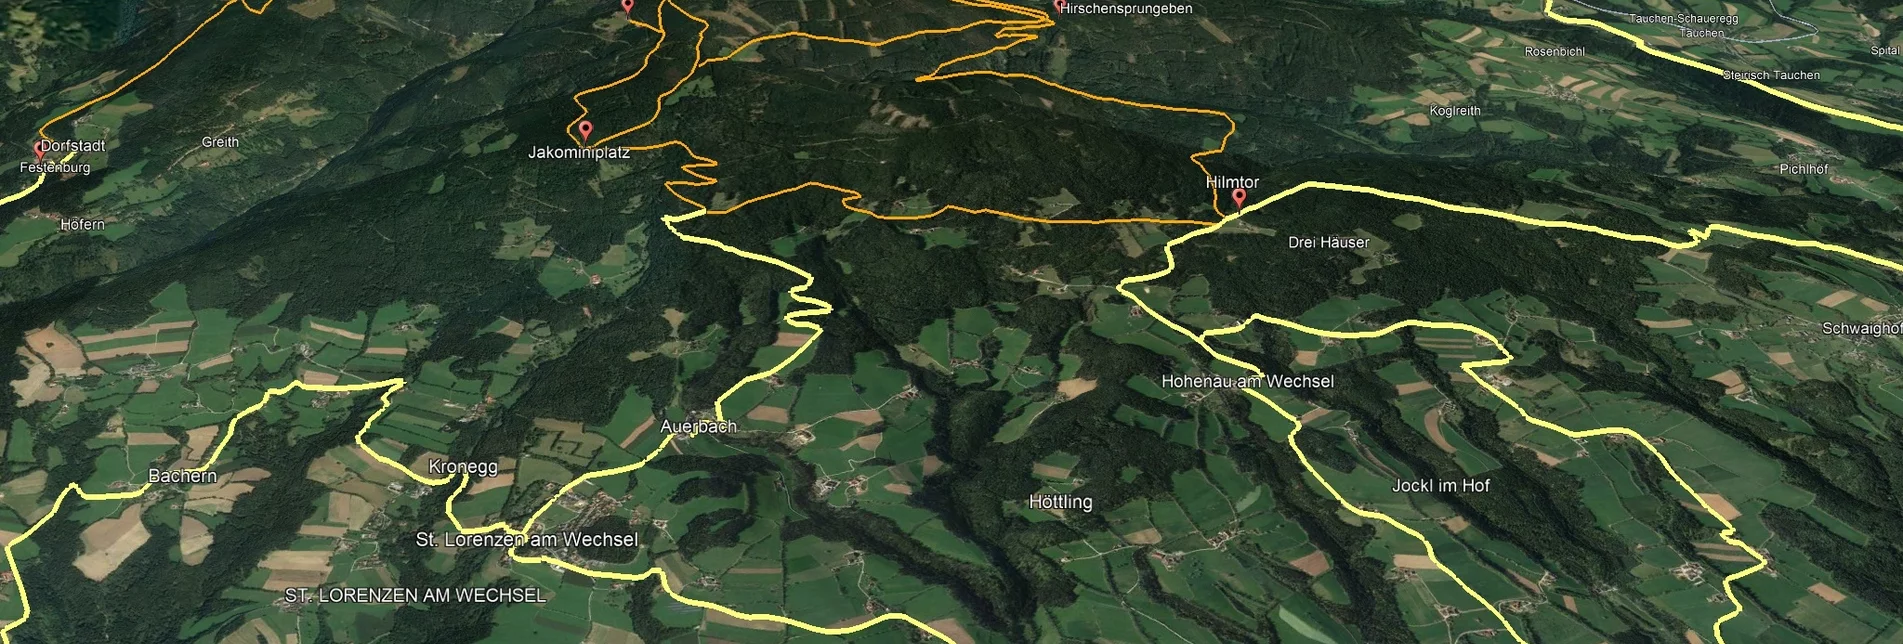 Mountainbike Steirische Wexl Trails - Zubringer Thalberg nach St. Lorenzen am Wechsel (Anbindung) - Touren-Impression #1 | © Verein Tourismusentwicklung Steirischer Wechsel